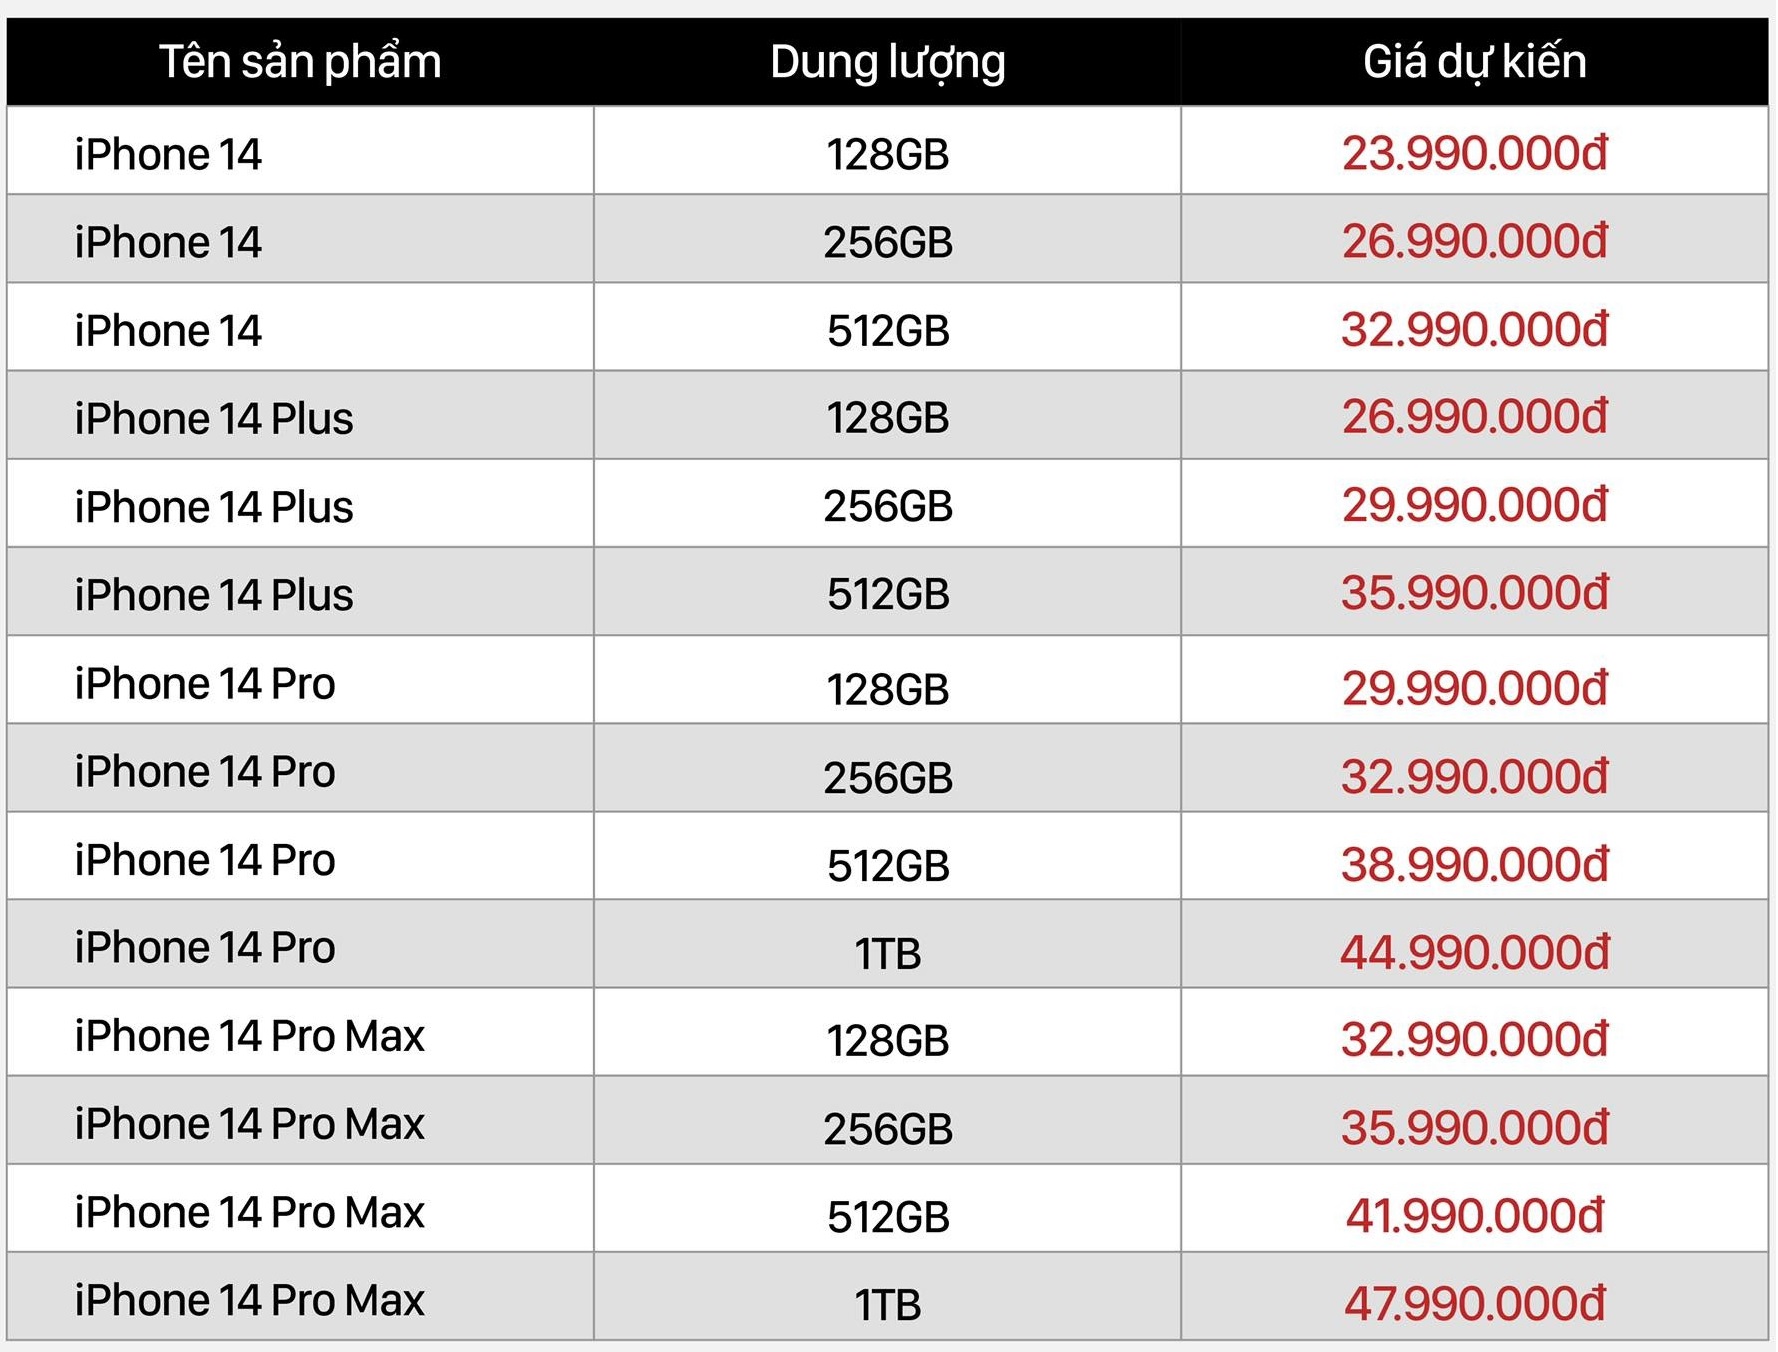 Nhiều đại lý công bố giá dự kiến iPhone 14 tại Việt Nam, bản cao nhất lên đến 50 triệu đồng - Ảnh 5.